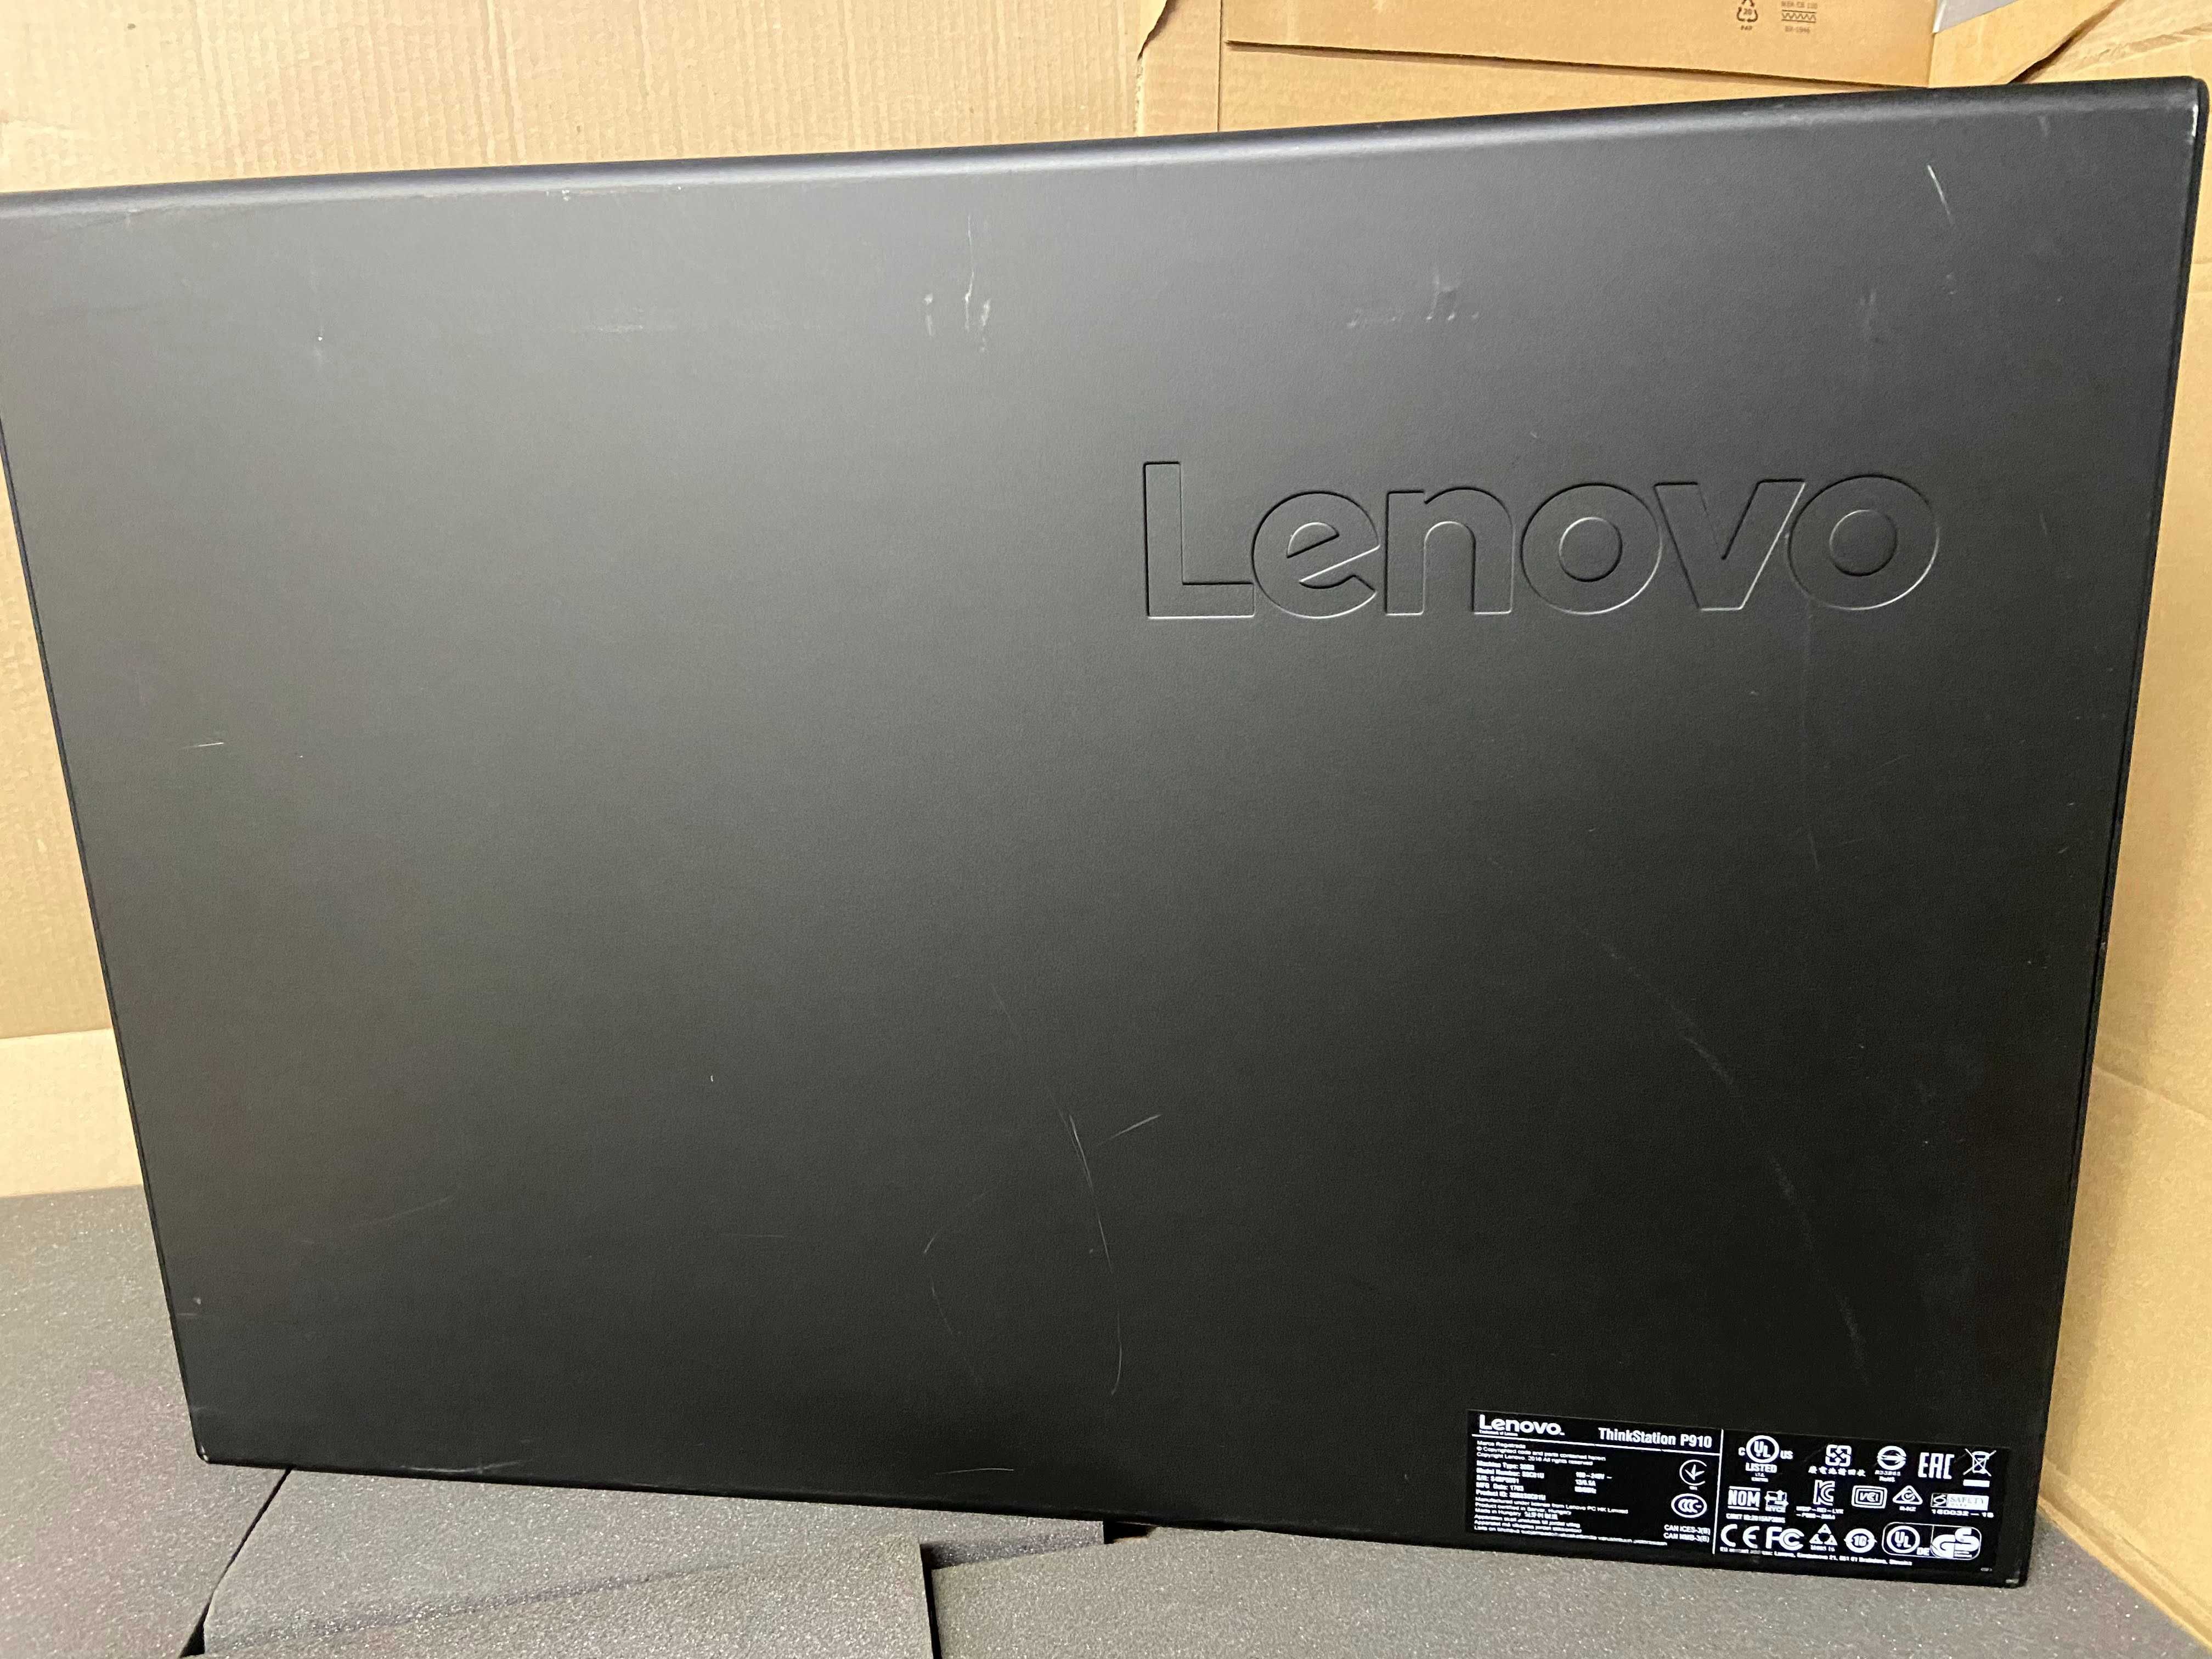 Lenovo P910 2* Xeon E5-2680 v4, 64GB RAM, Quadro M4000, 512GB SSD